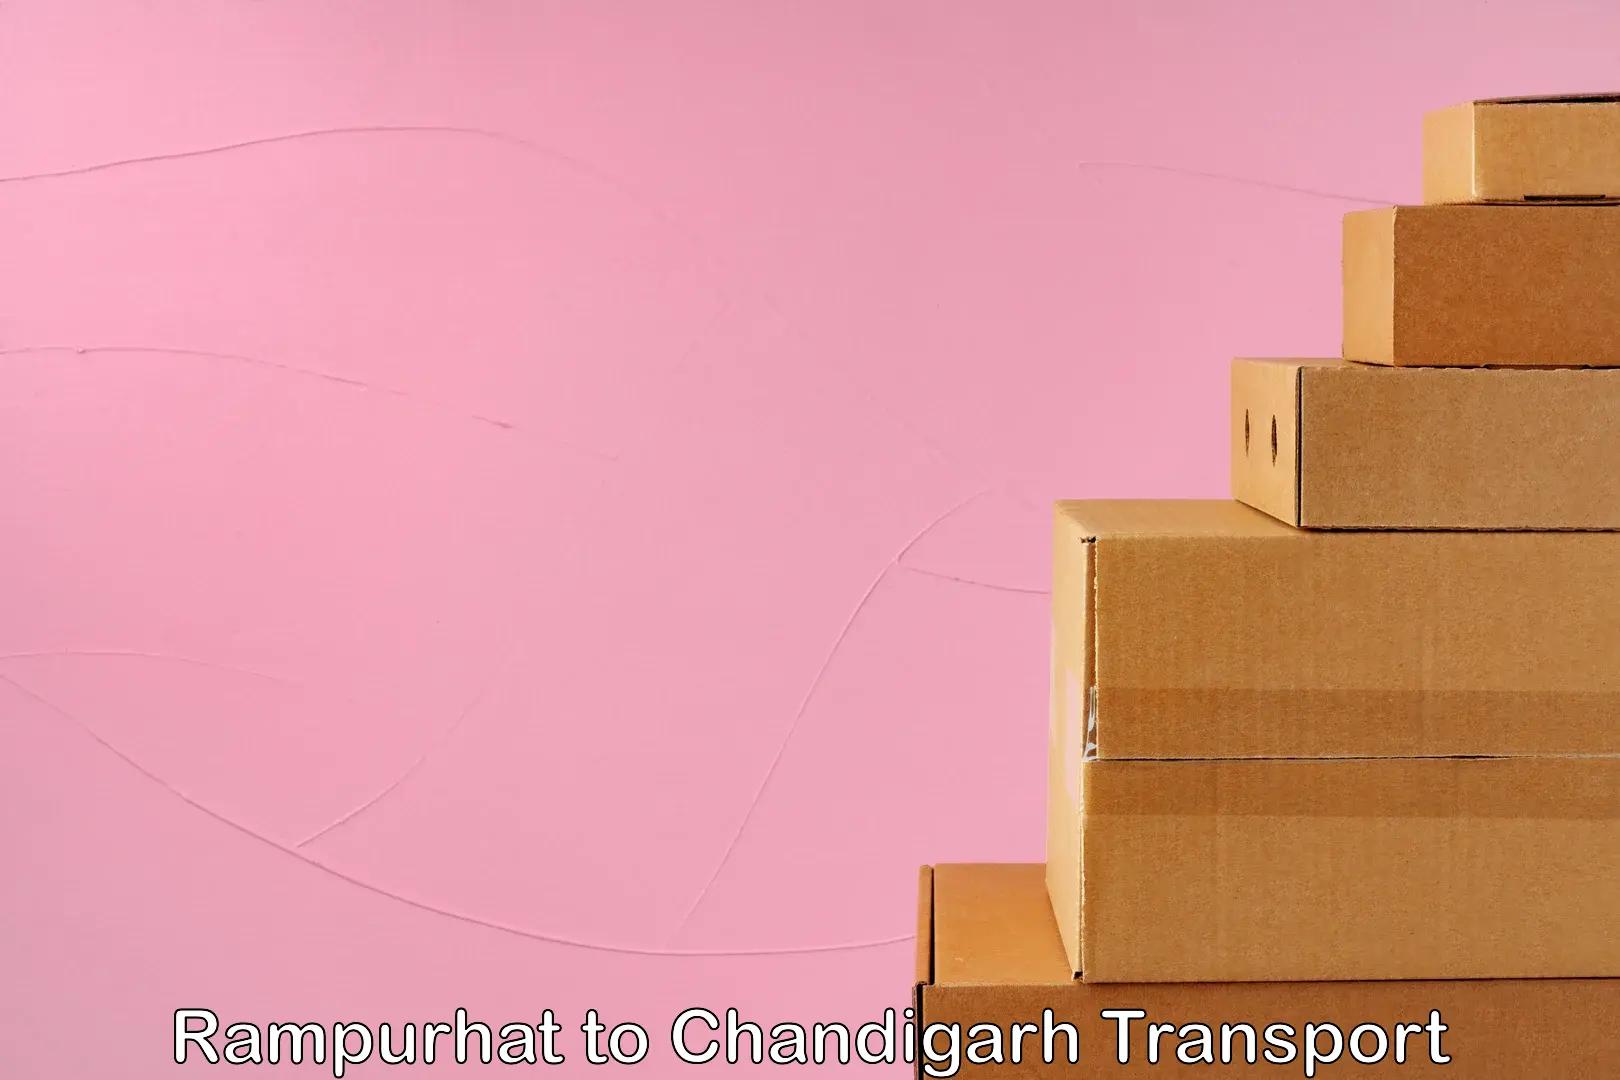 Land transport services Rampurhat to Chandigarh